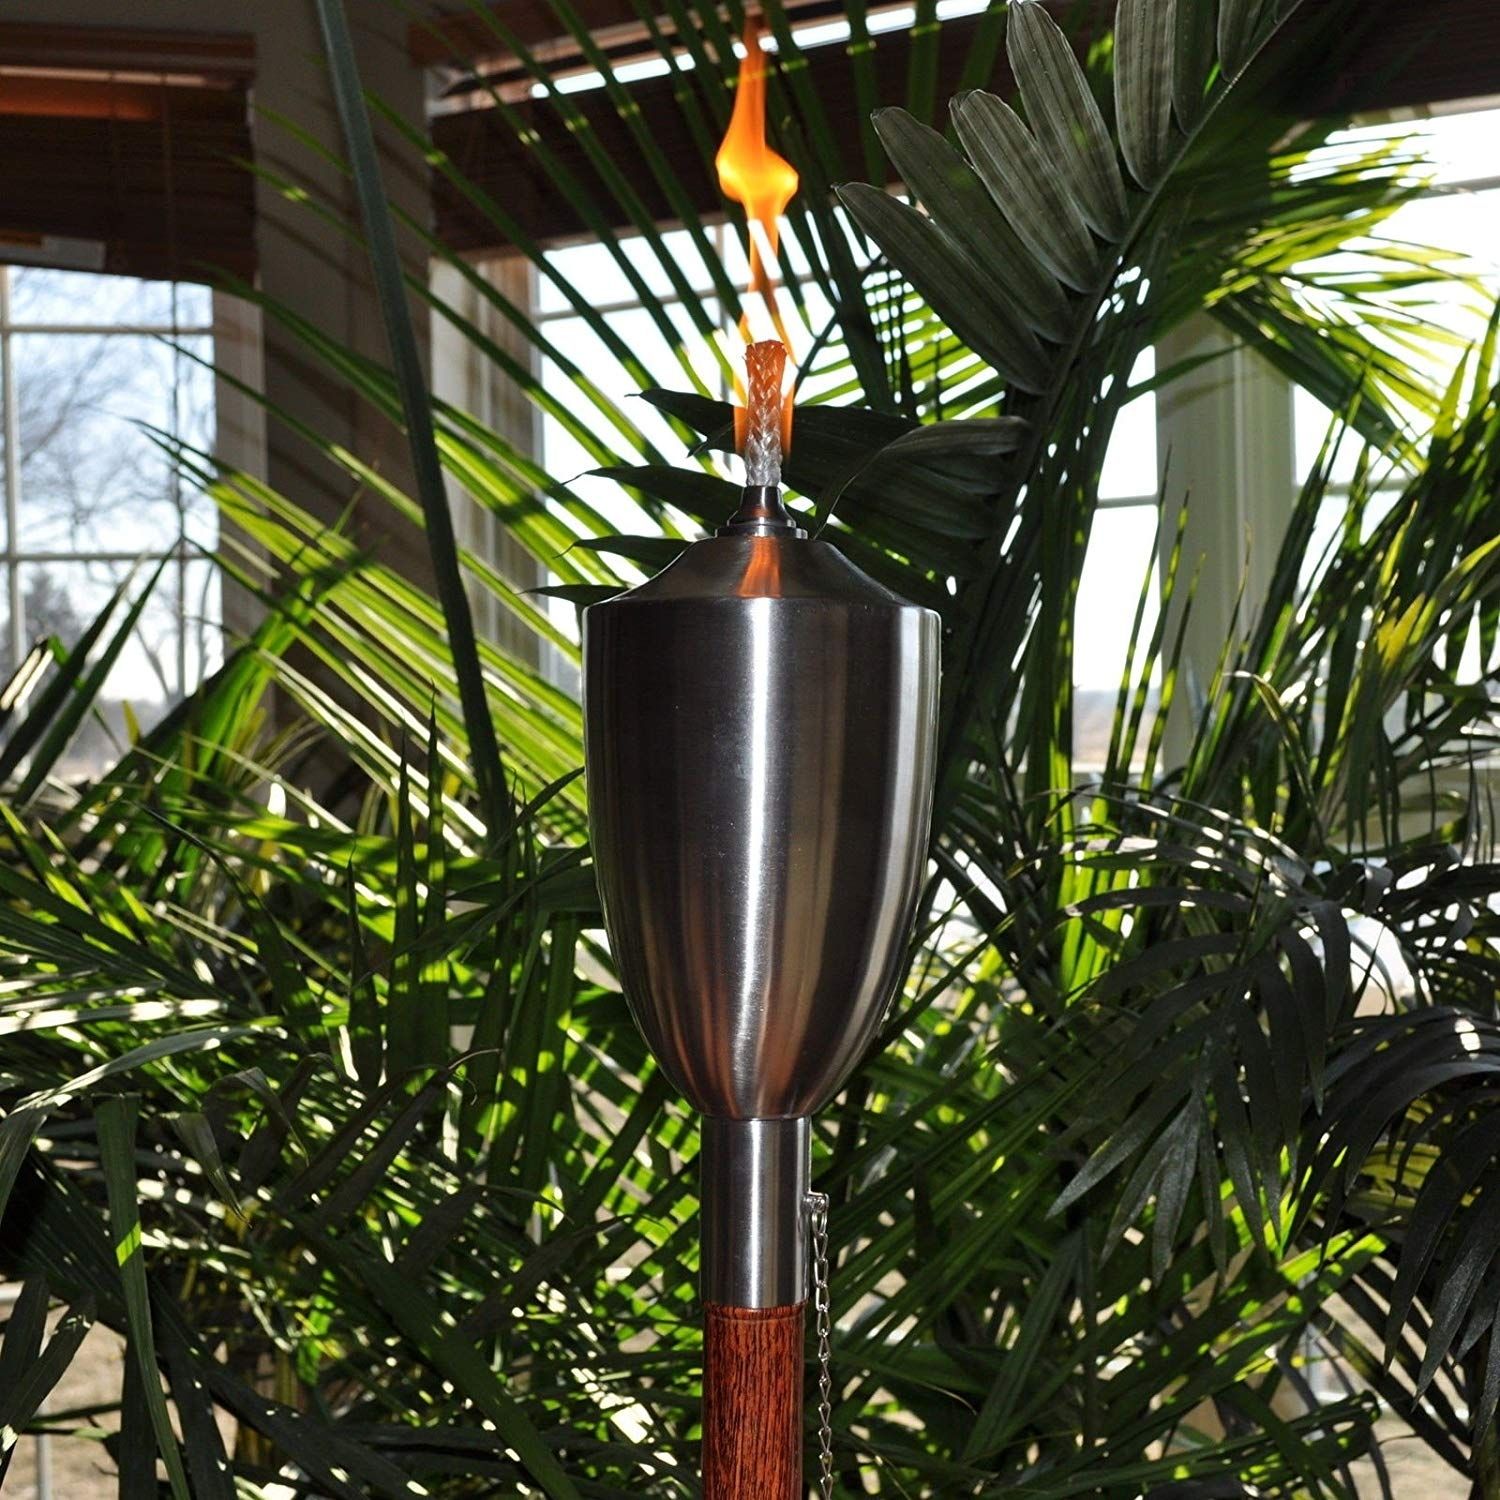 Eric X Light 12 Pcs Long Life Fiberglass Replacement Tiki Torch Wick With Regard To Outdoor Tiki Lanterns (View 18 of 20)